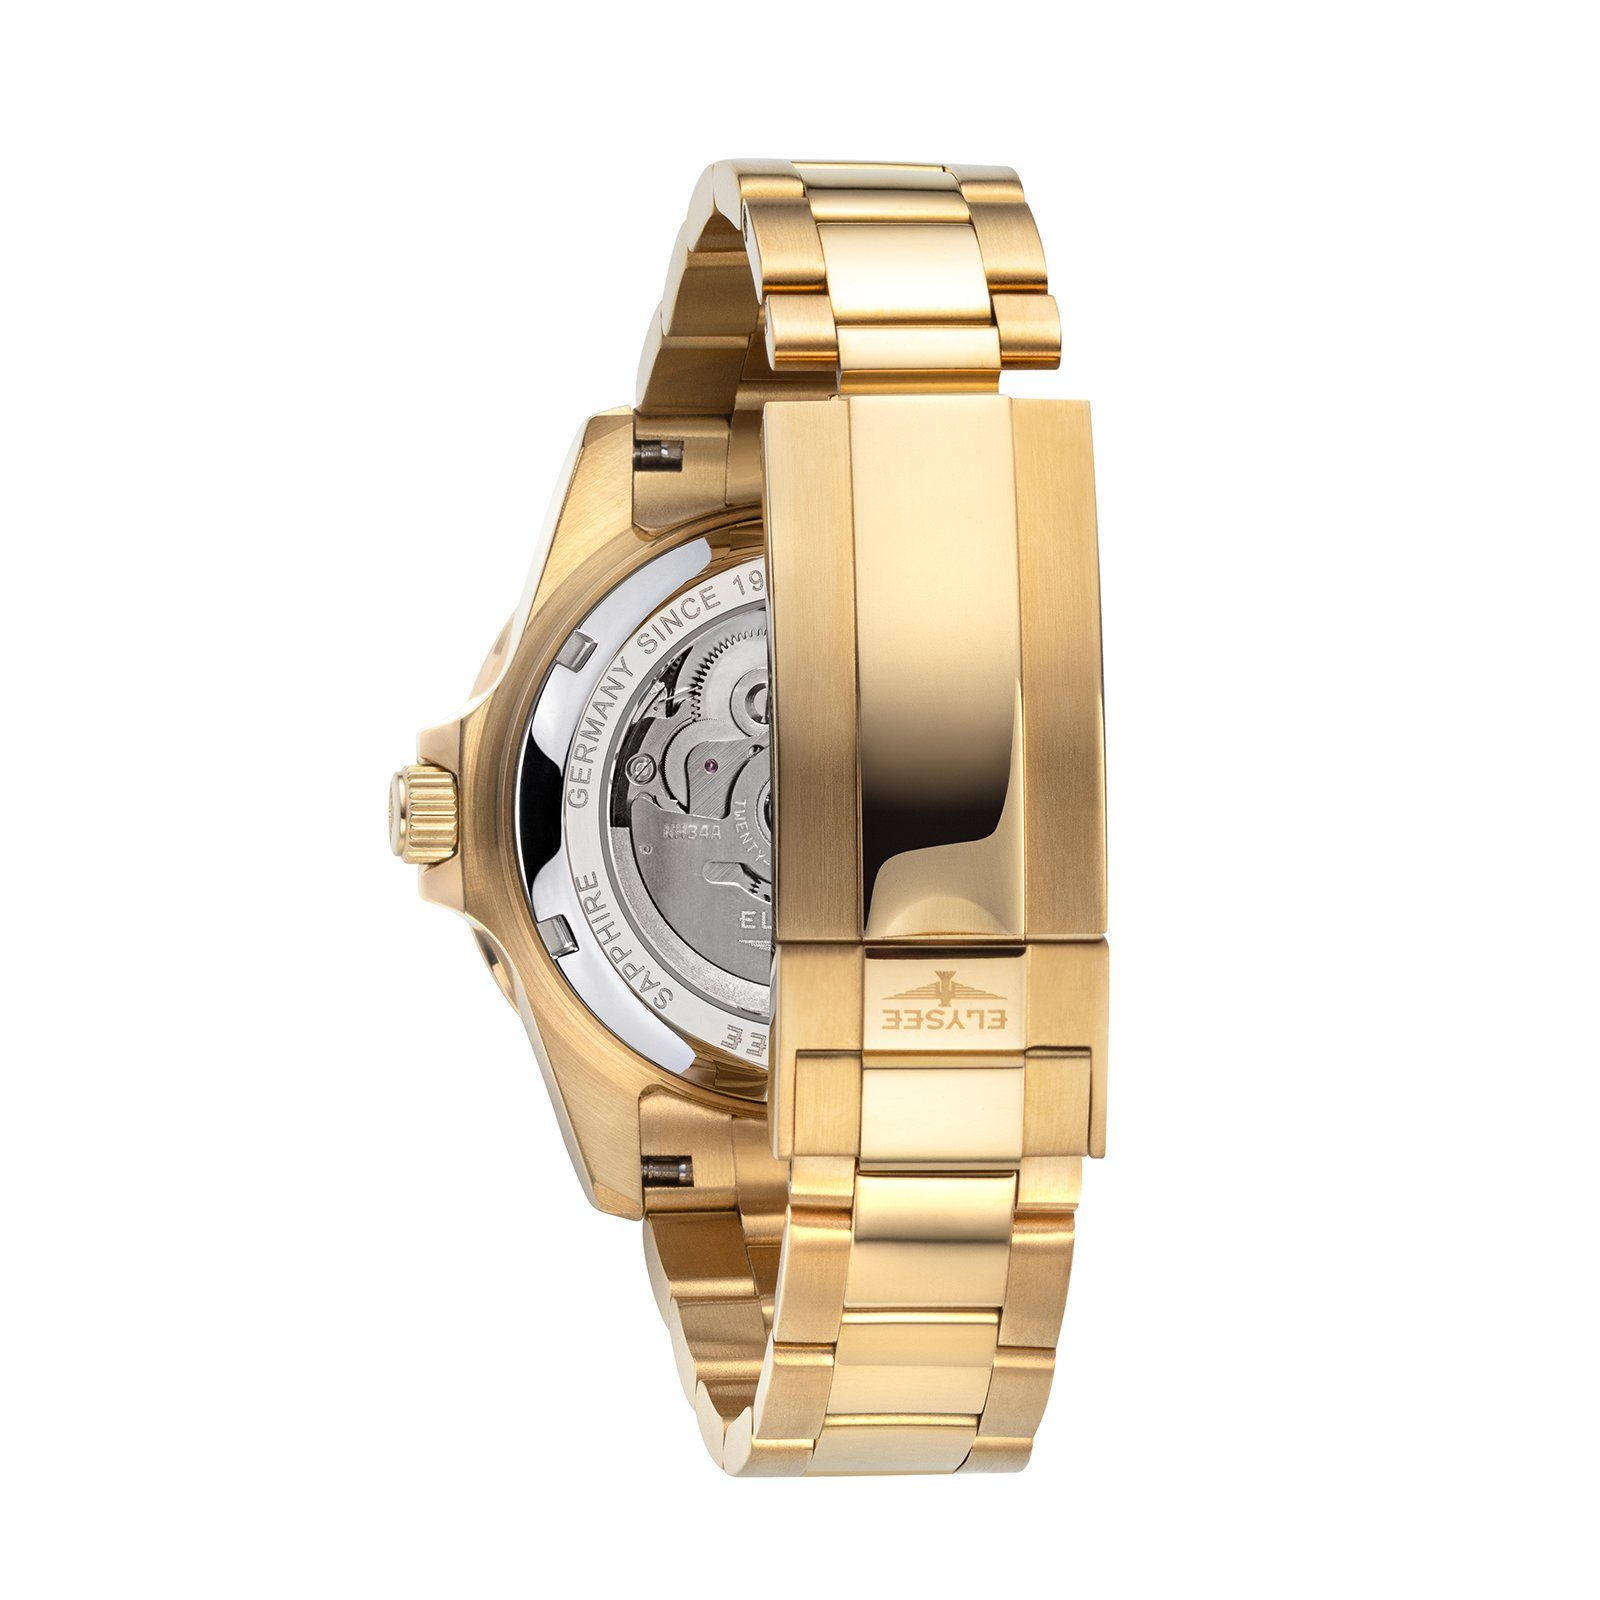 Herrenuhr GMT Elysee ideal Edelstahl AUTOMATIC Geschenk auch silber, Automatikuhr 4-Zeiger-Uhr 40,5mm gold als